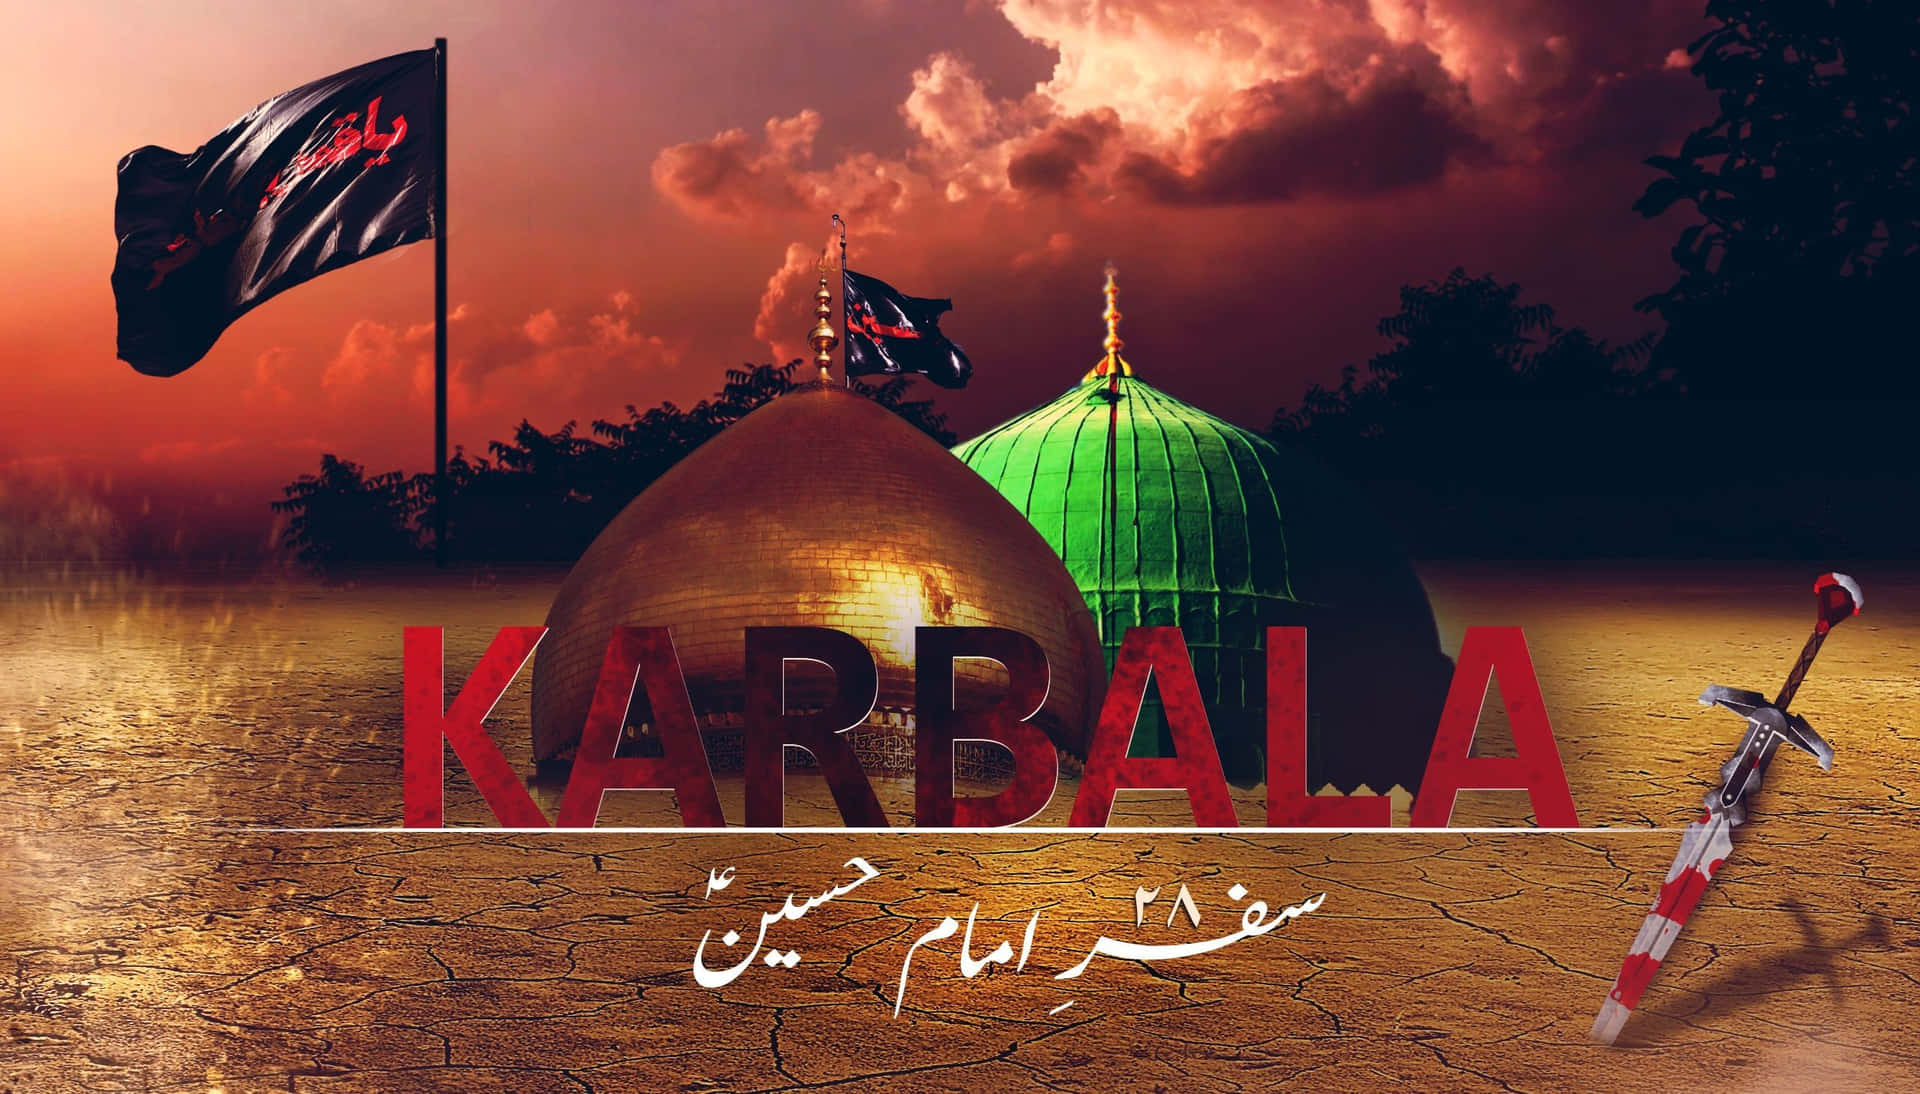 The Hallowed Land of Karbala